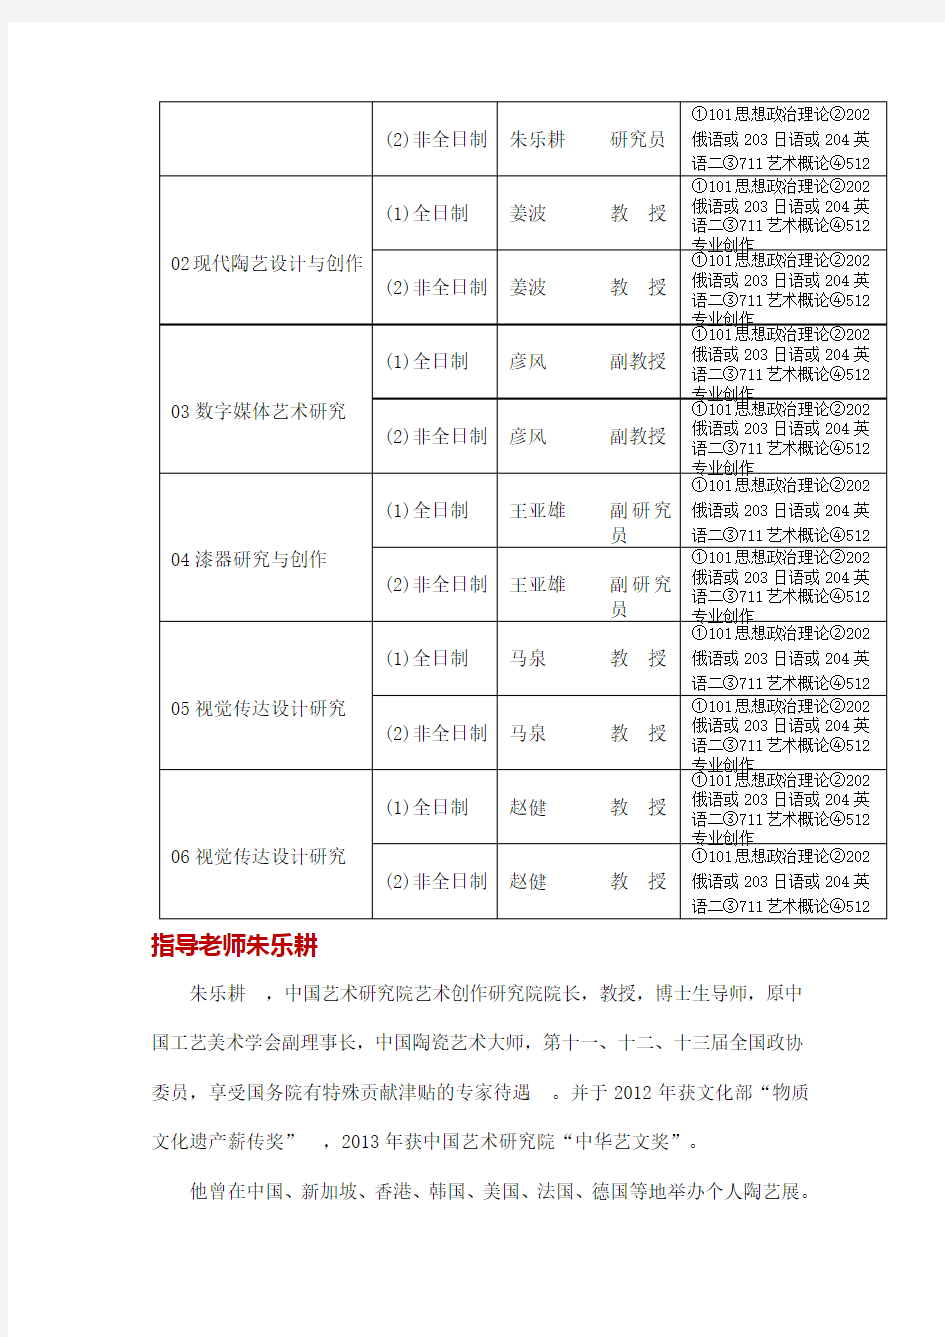 2019年中国艺术研究院艺术设计考研招生目录、指导老师朱乐耕